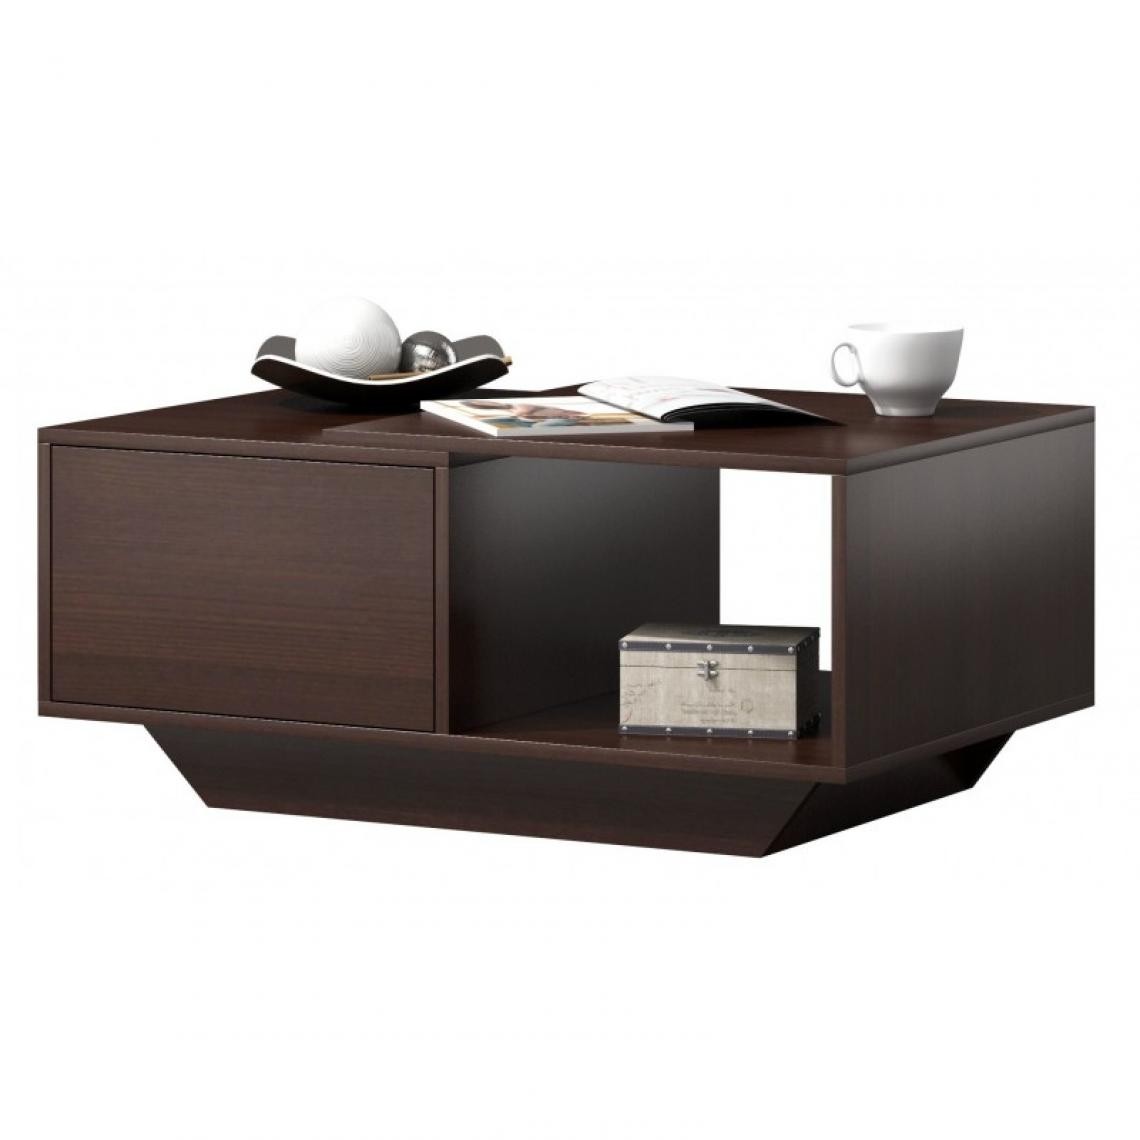 Hucoco - NIMRI - Table à café/table basse moderne salon - Dimensions plateau : 90x60x42 - Rangement spacieux et fonctionnel - Wenge - Tables d'appoint